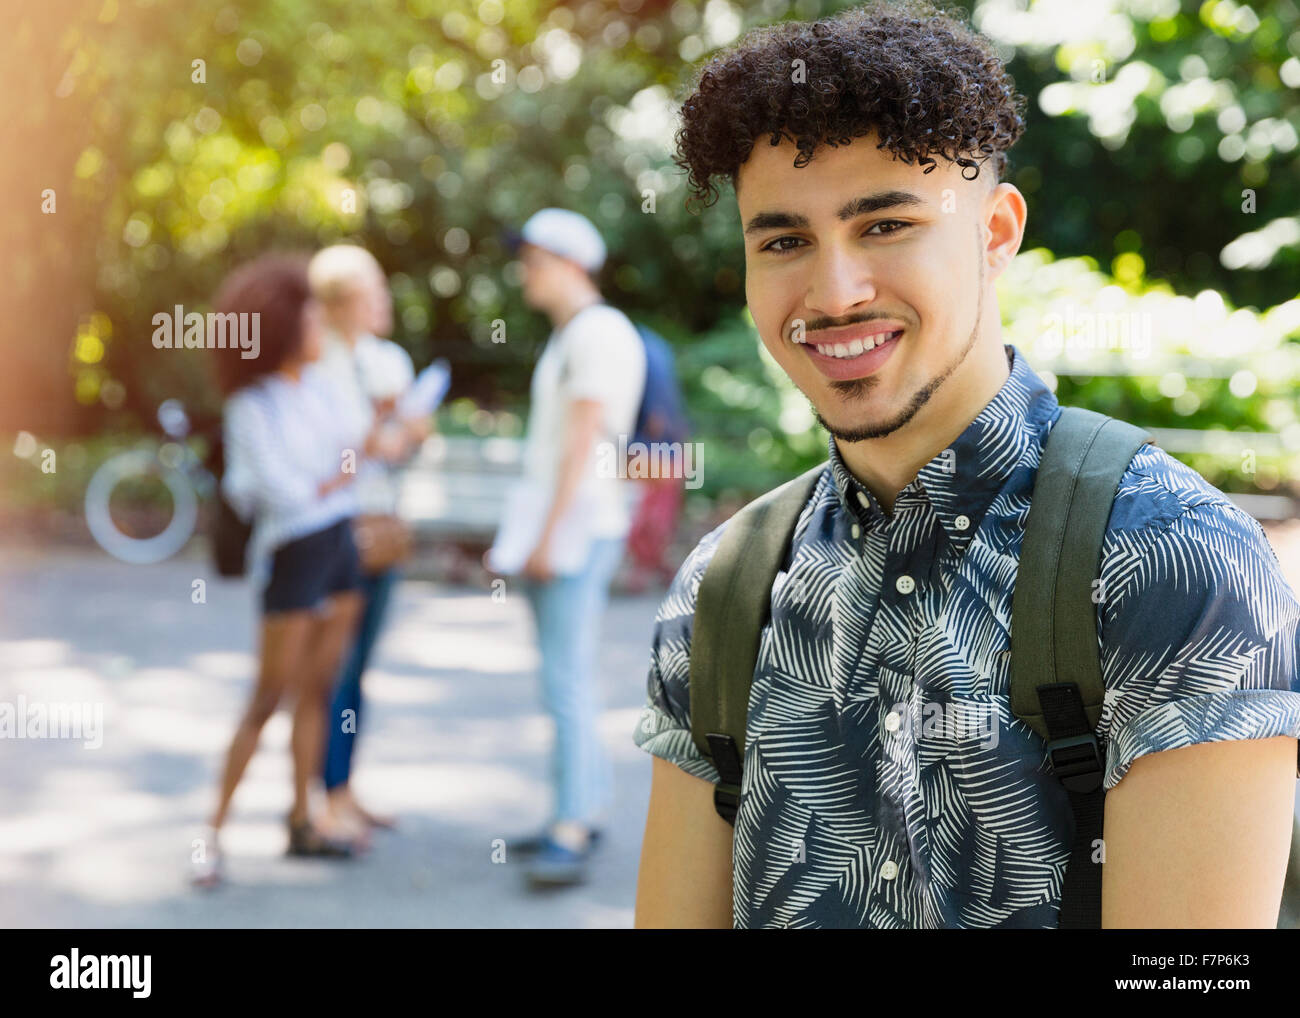 Portrait of smiling man avec les cheveux noirs bouclés dans park Banque D'Images